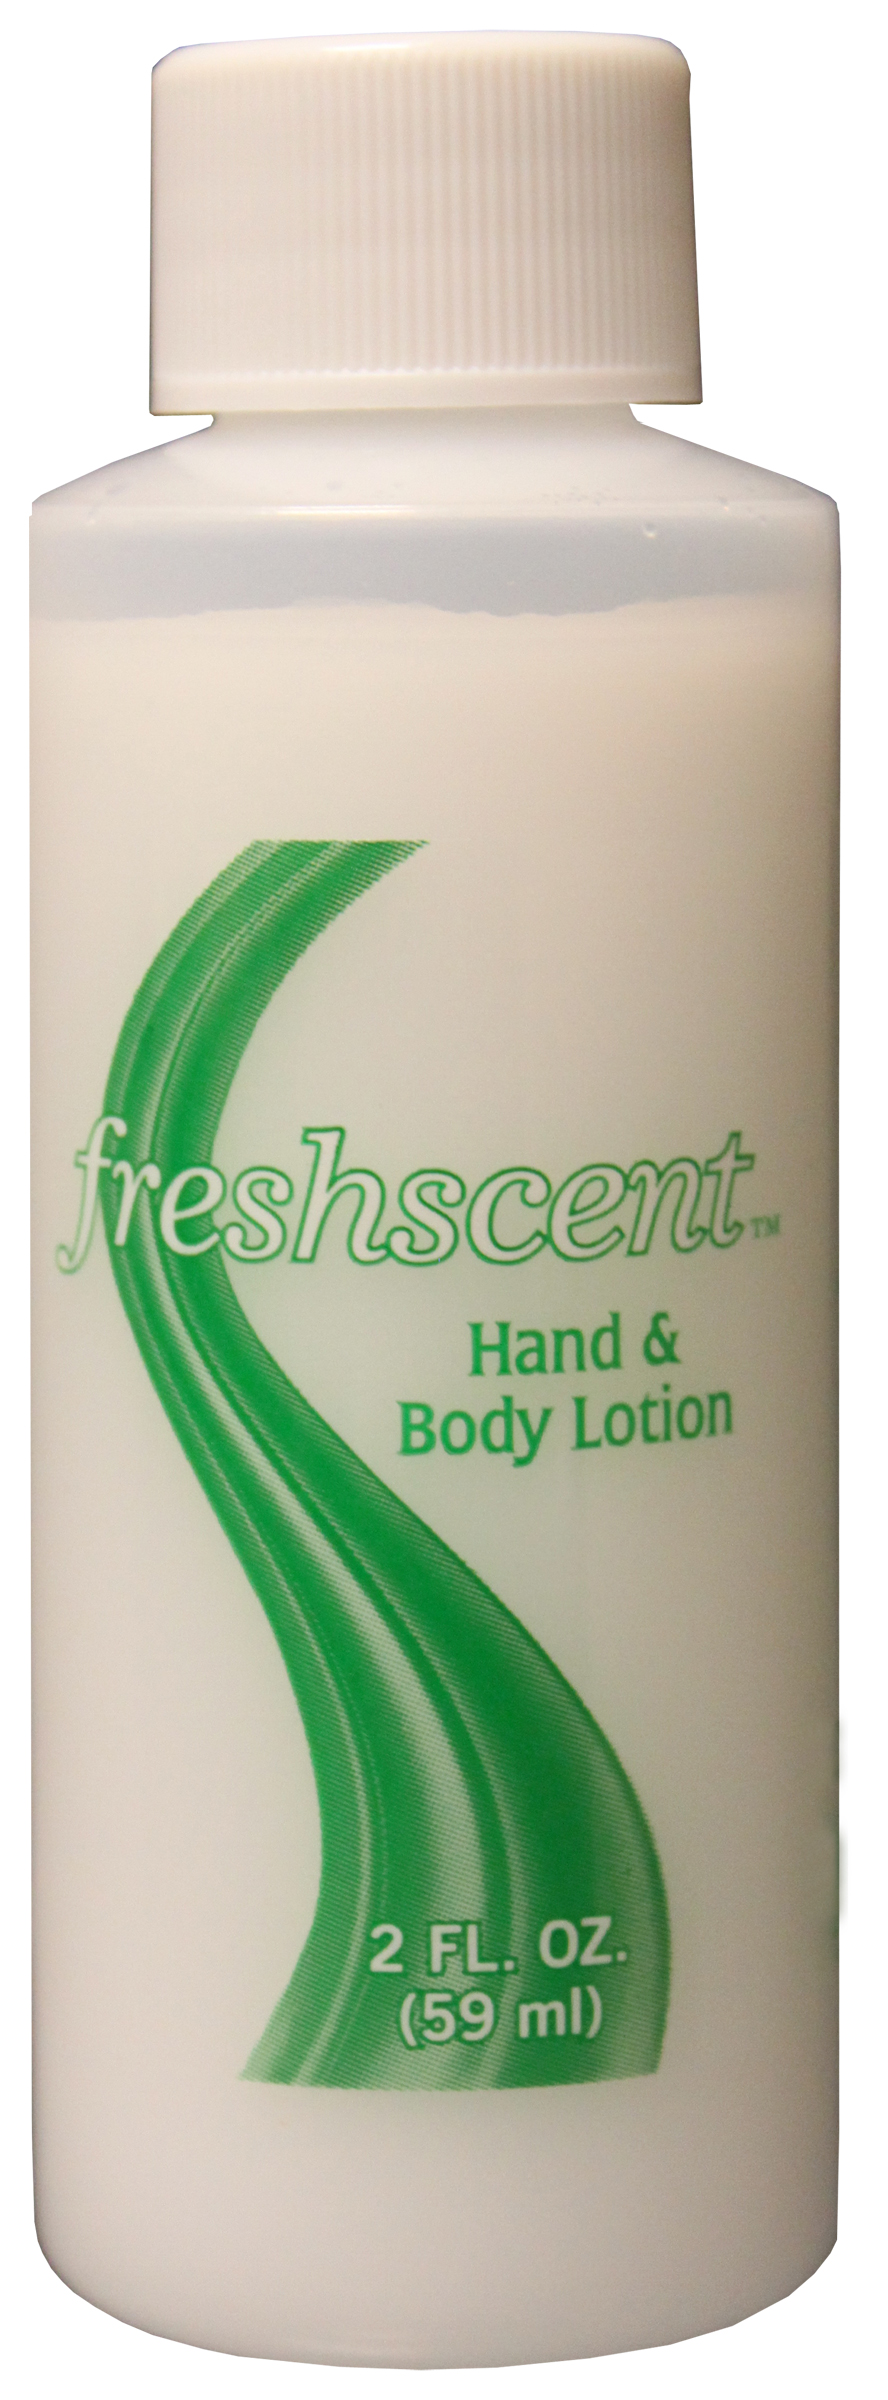 Freshscent 2 oz. Hand & Body Lotion